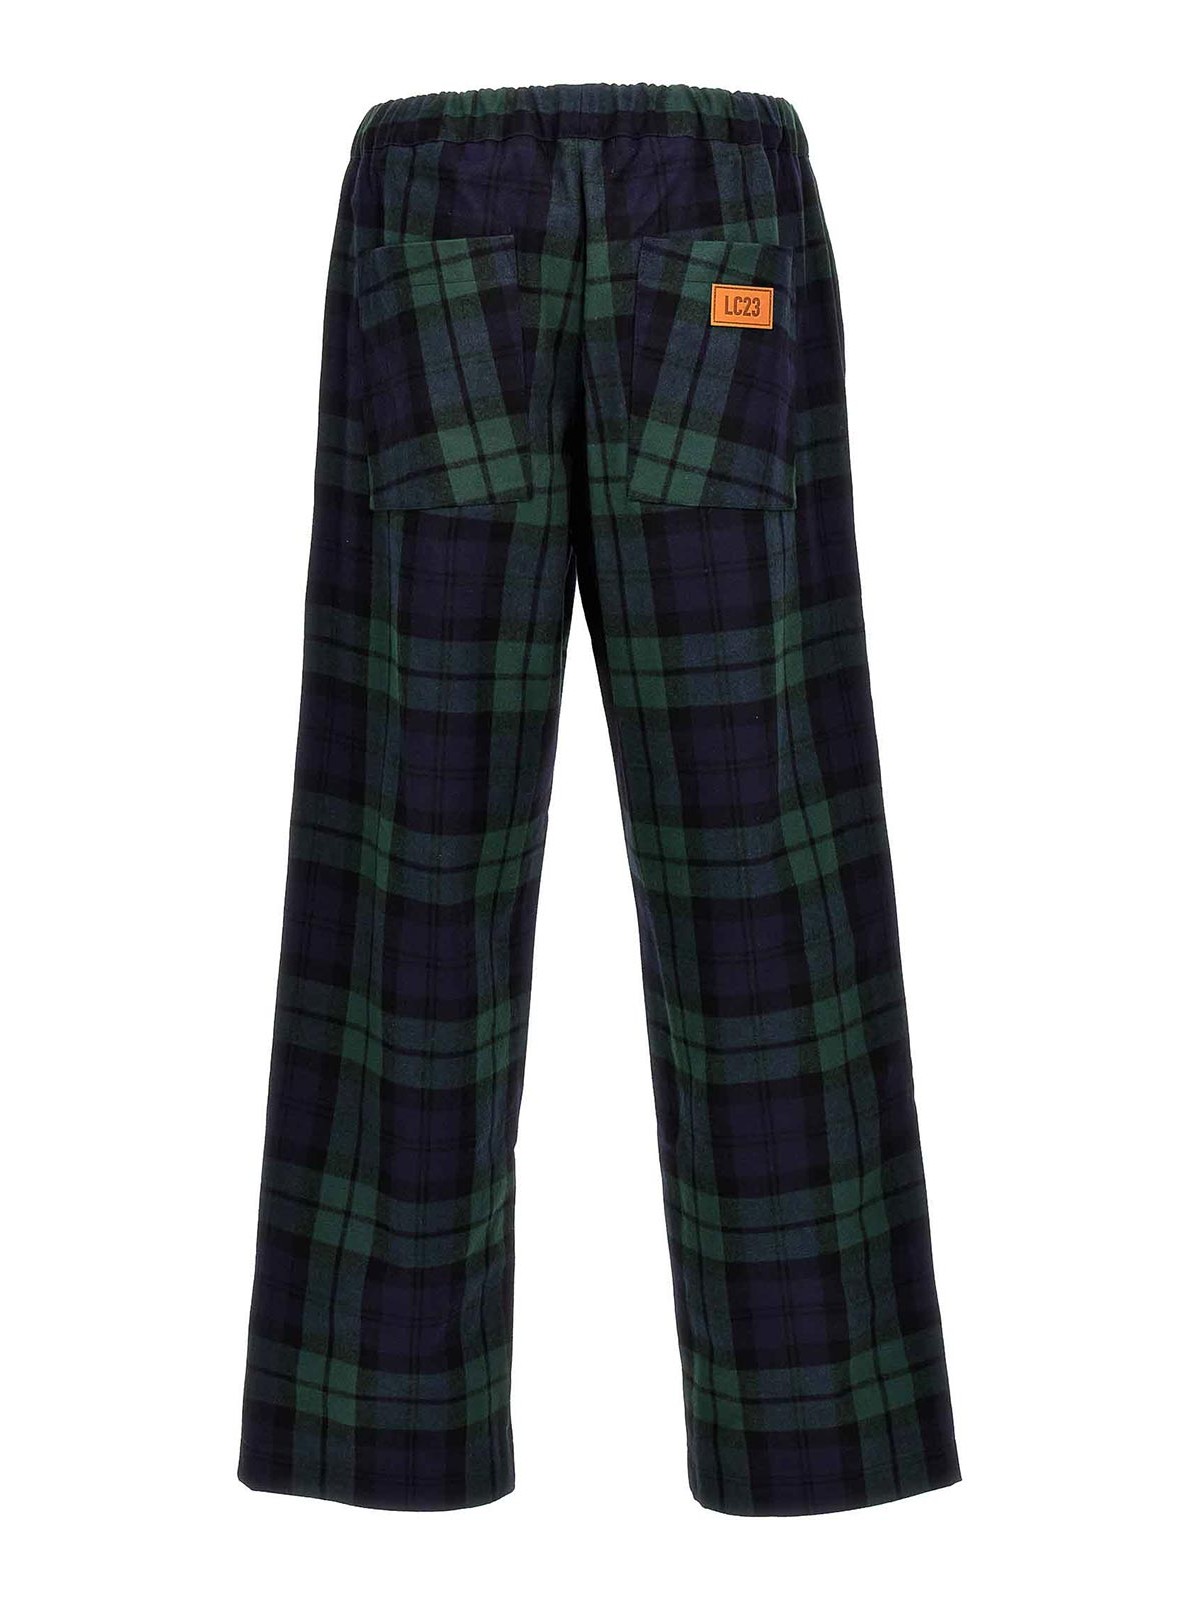 Shop Lc23 Blackwatch Pants In Multicolour